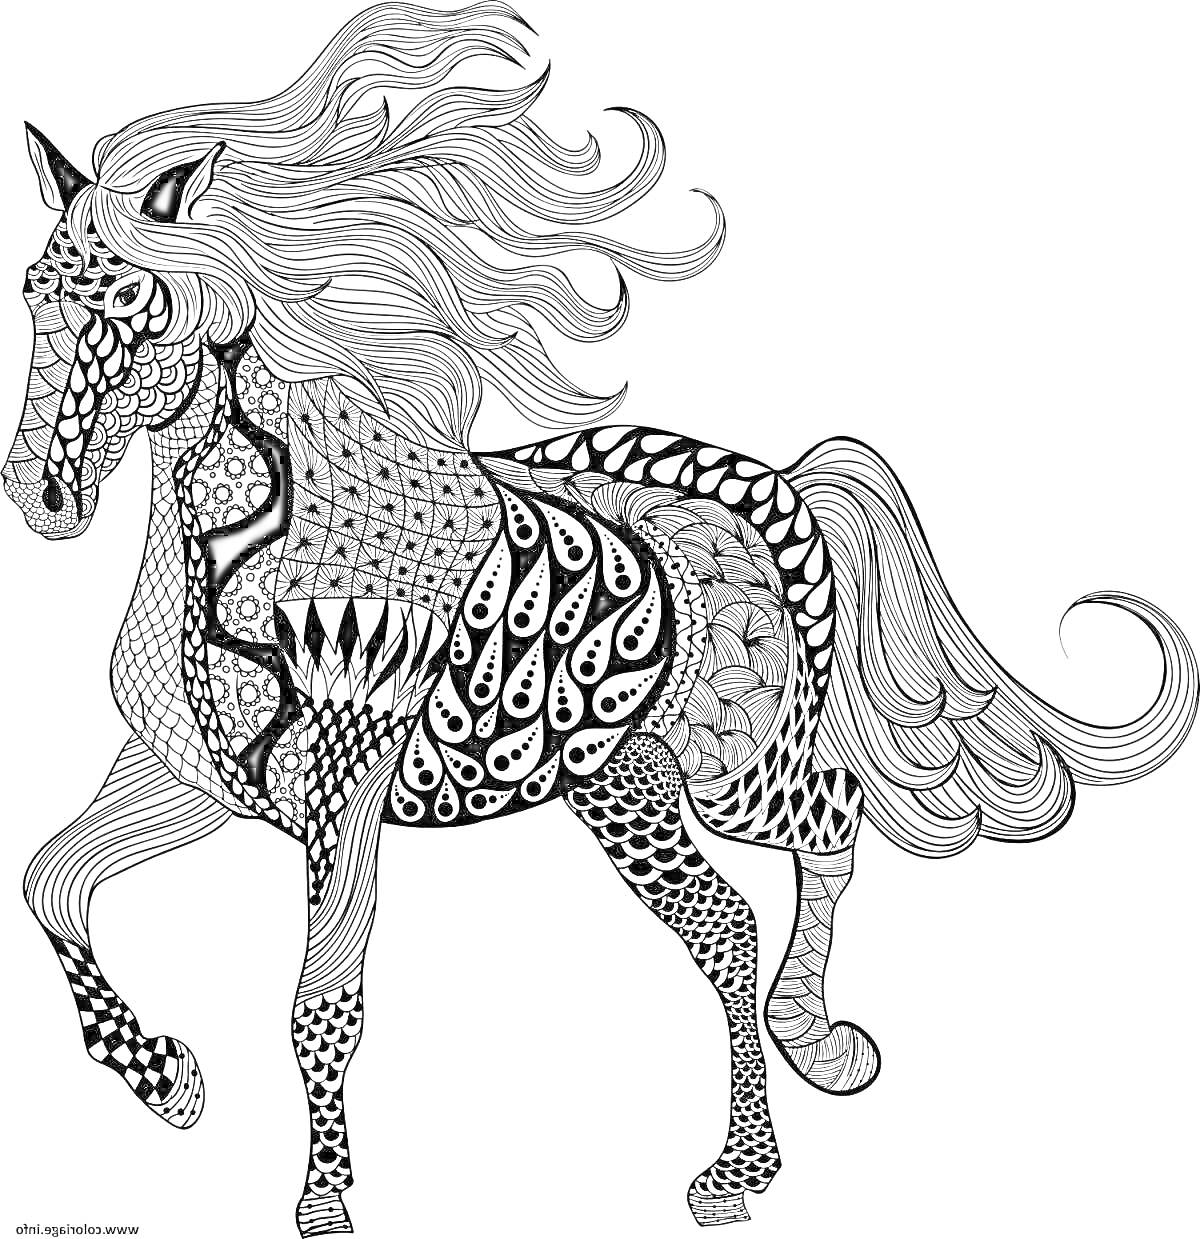 Раскраска Лошадь с узорами, сложная раскраска